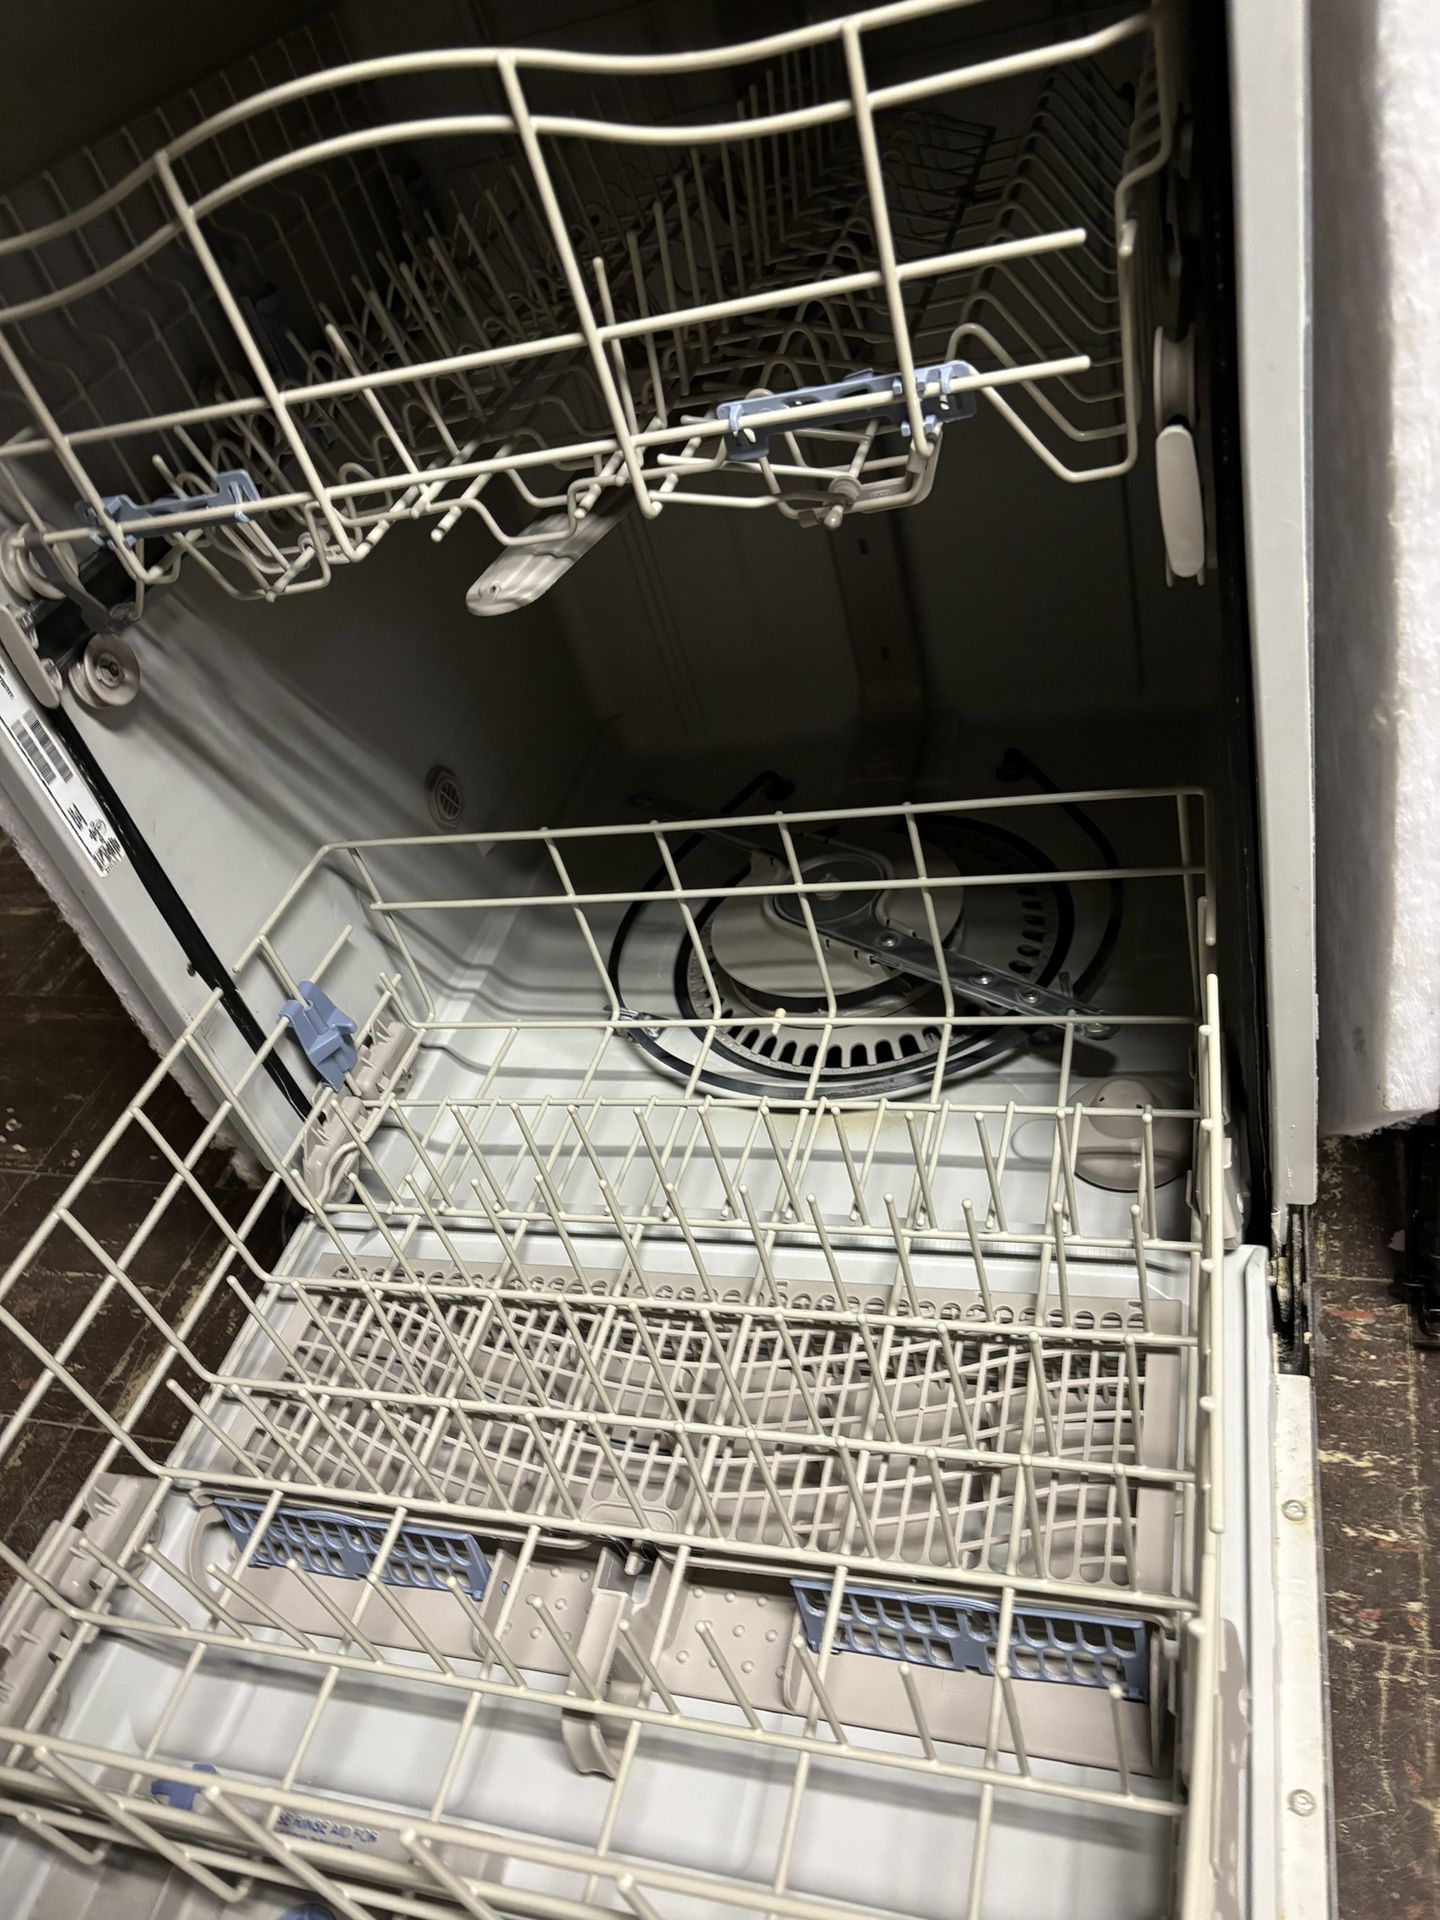 Whirpool Dishwasher